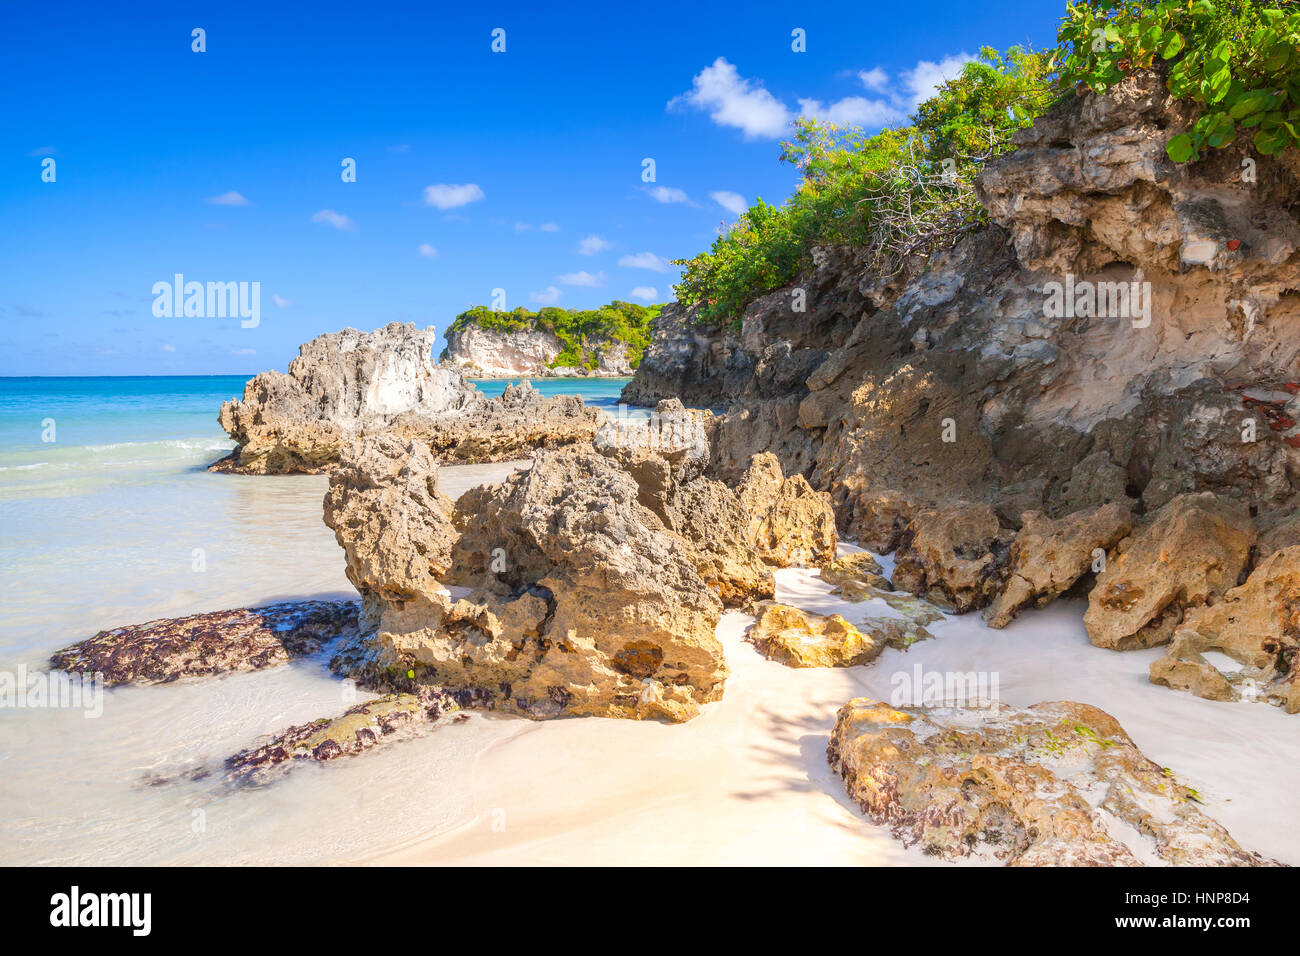 Coastal Steinen auf Macao Beach, touristische Resort der Insel Hispaniola Dominikanische Republik Stockfoto